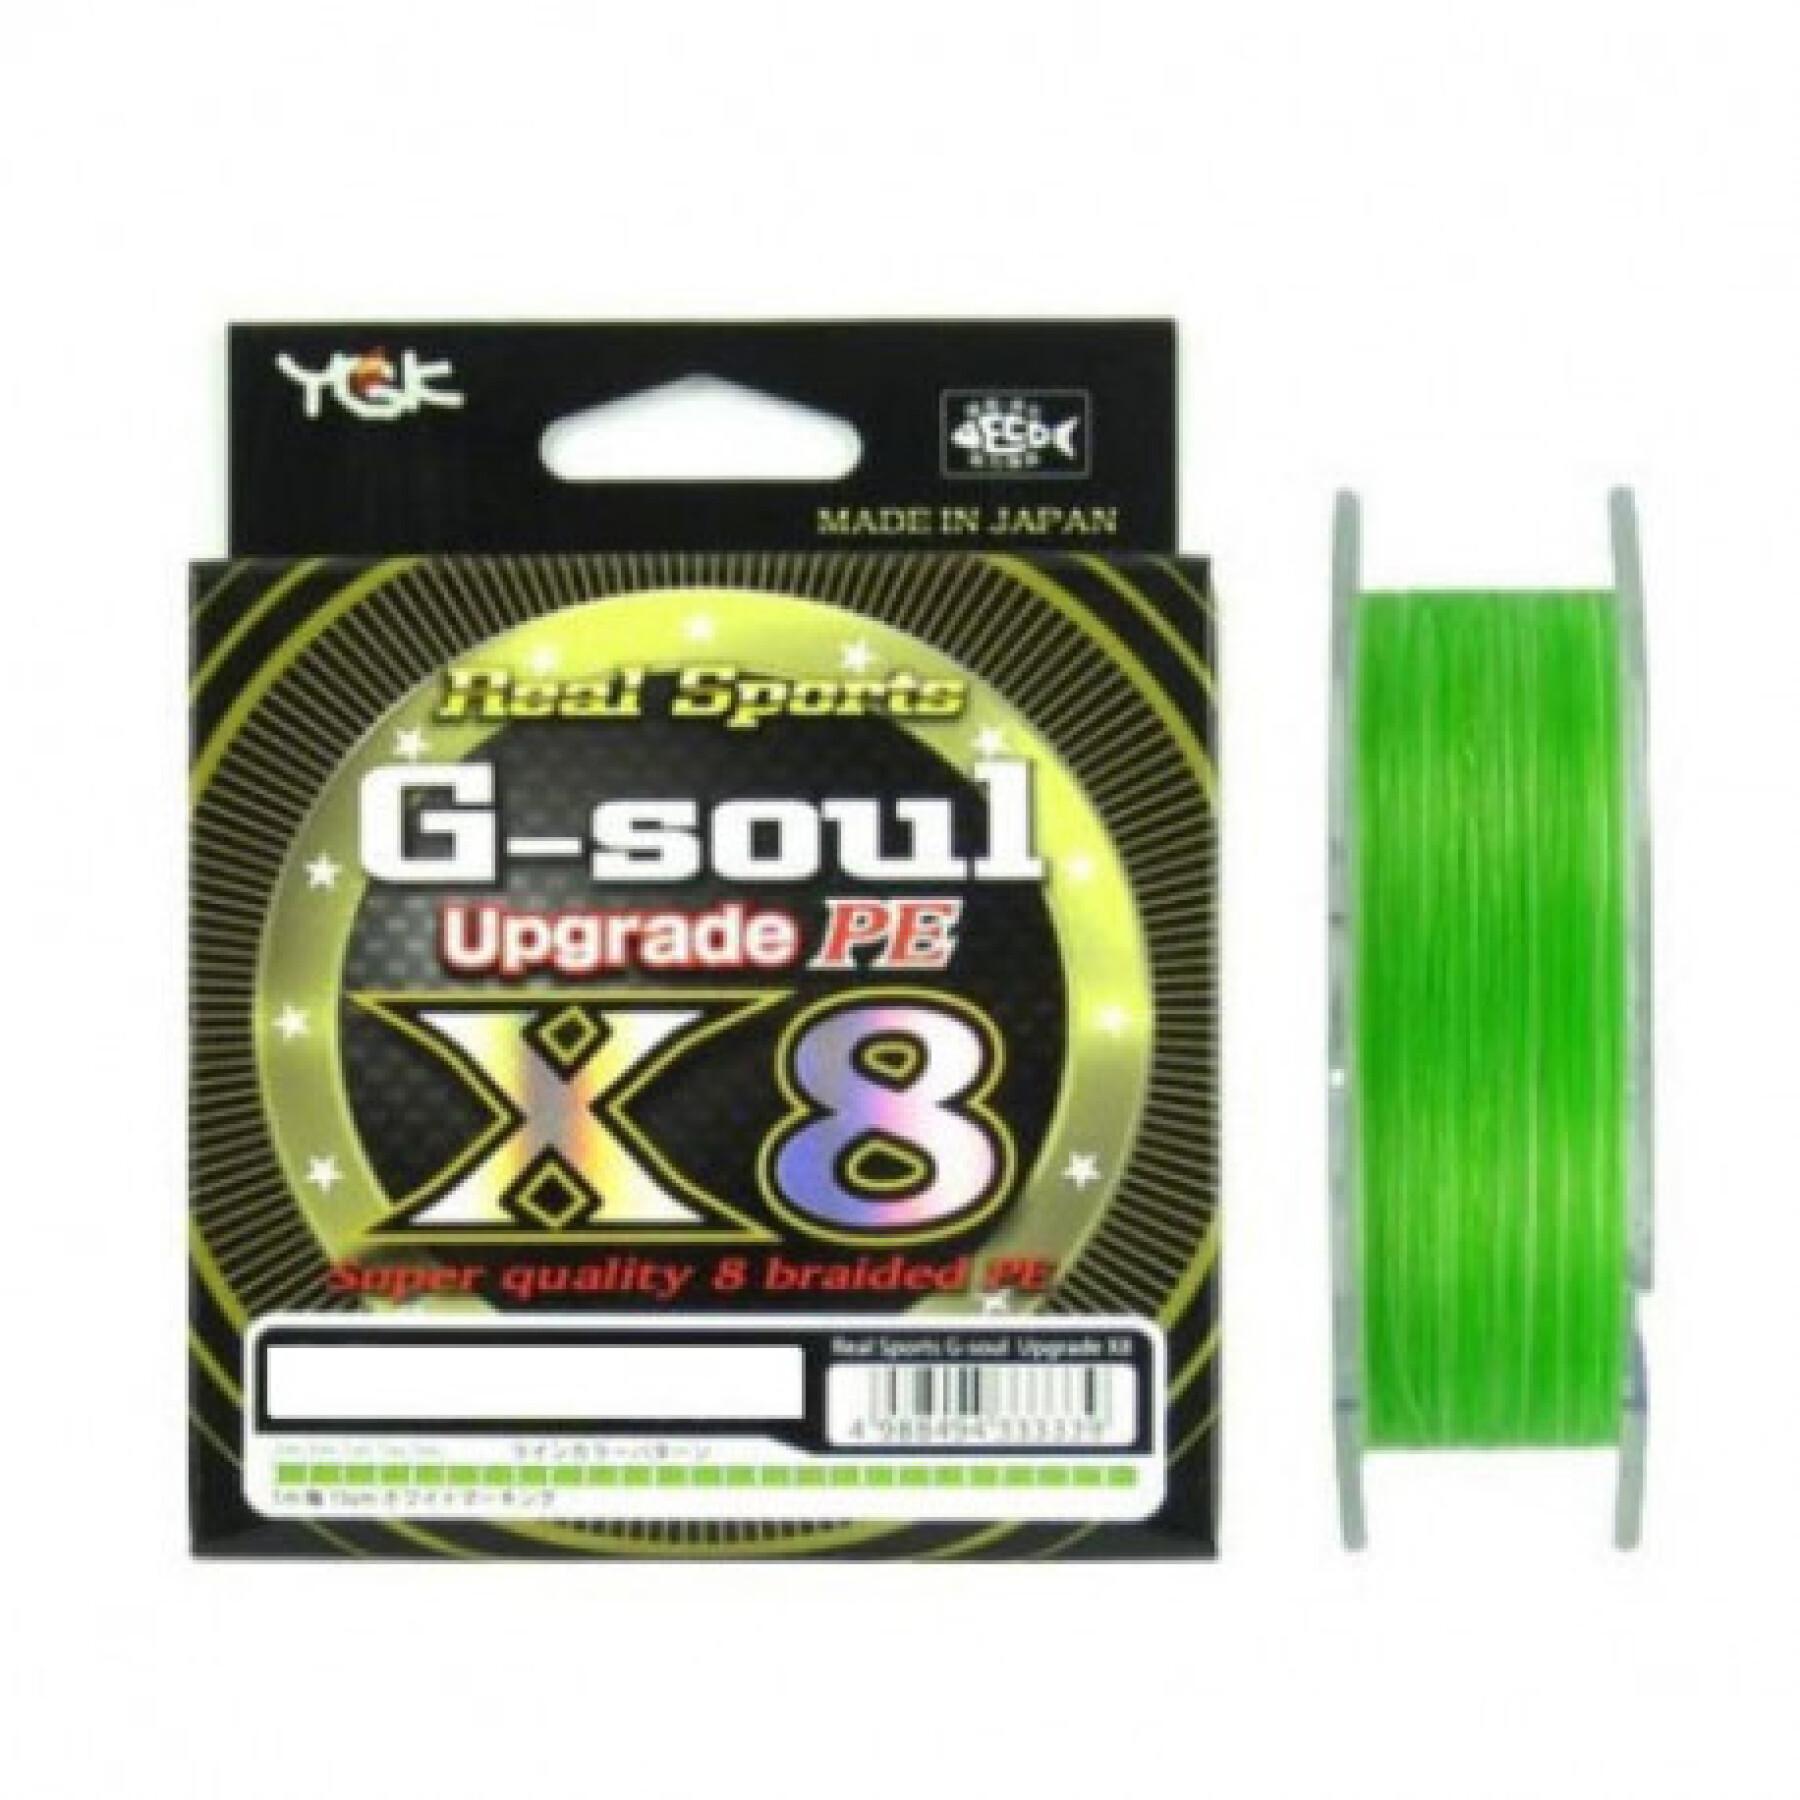 Treccia YGK Wx8 Real Sports G Soul - Pe 1 (16Lb)